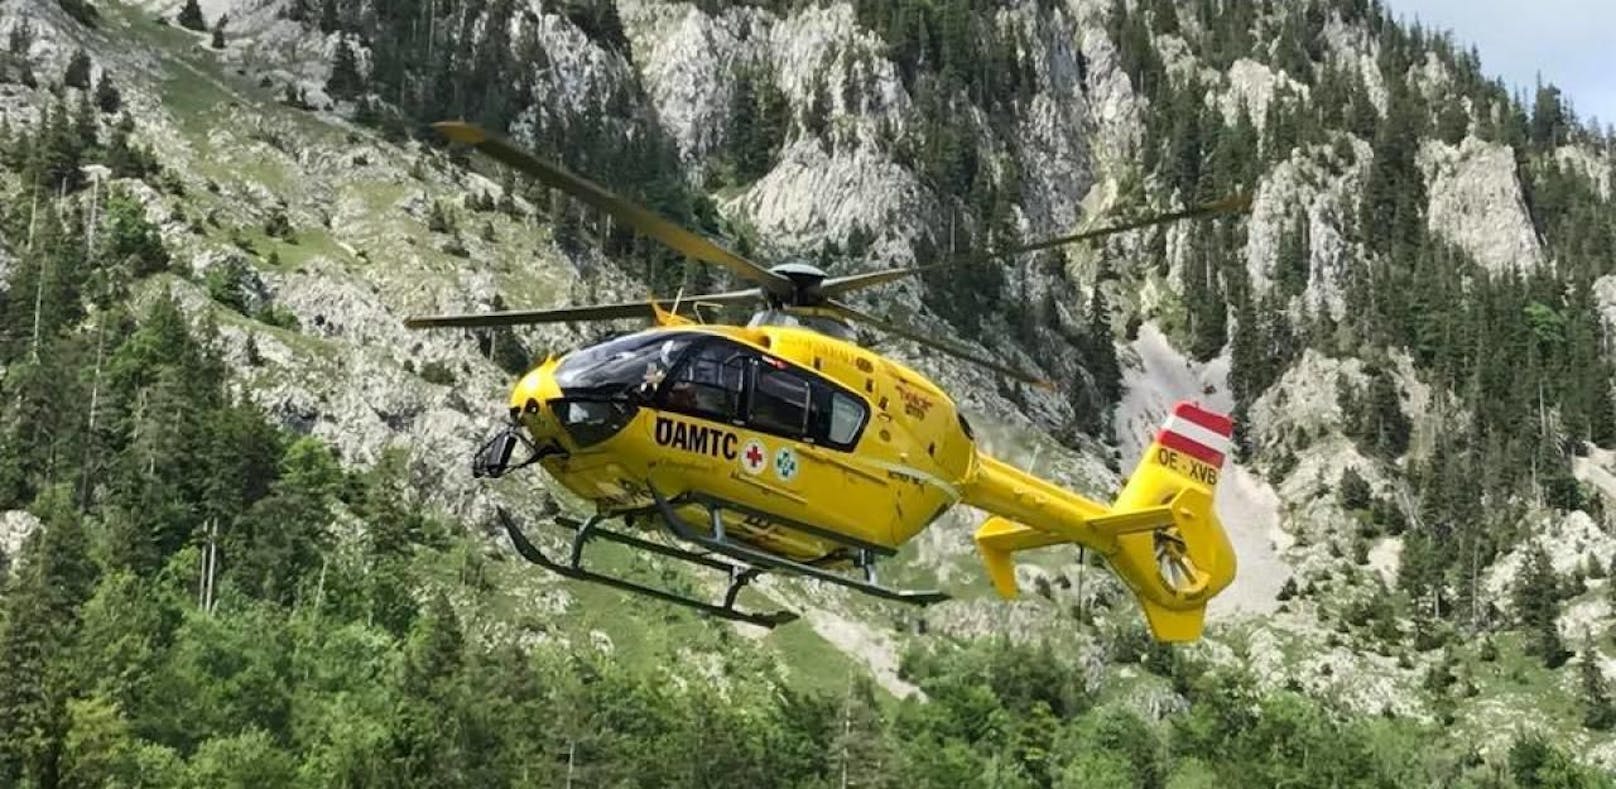 Am Traunstein kam es am Mittwoch einem schweren Kletterunfall, der ein Menschenleben forderte. 